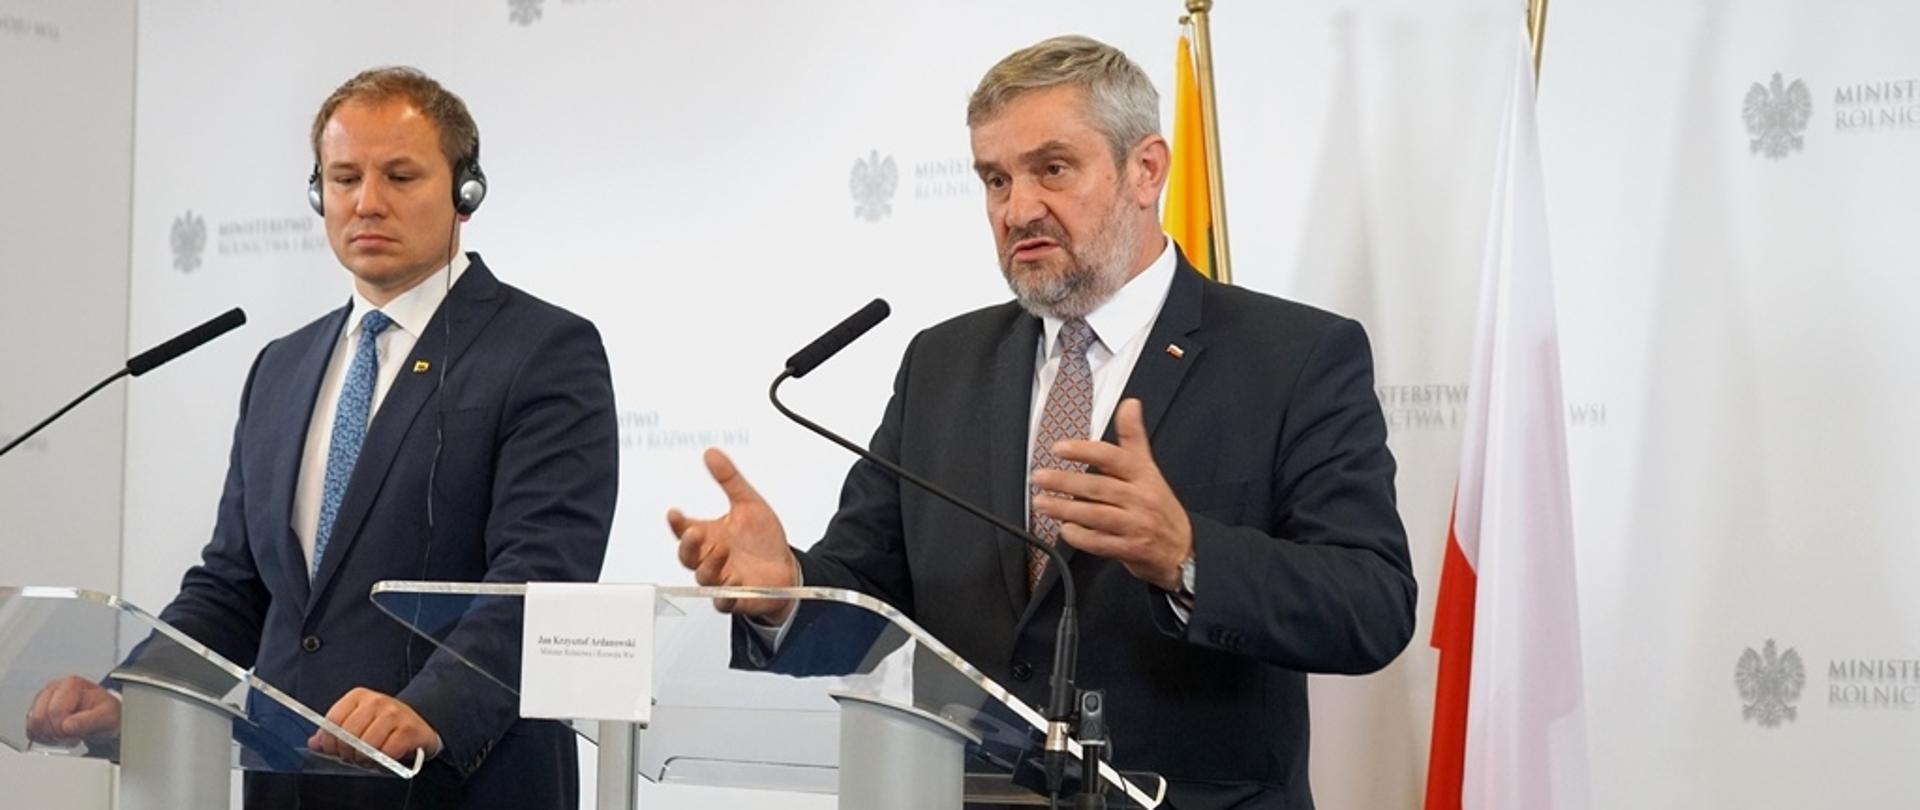 Minister Jan Krzysztof Ardanowski oraz minister Giedrius Surplys podczas konferencji prasowej